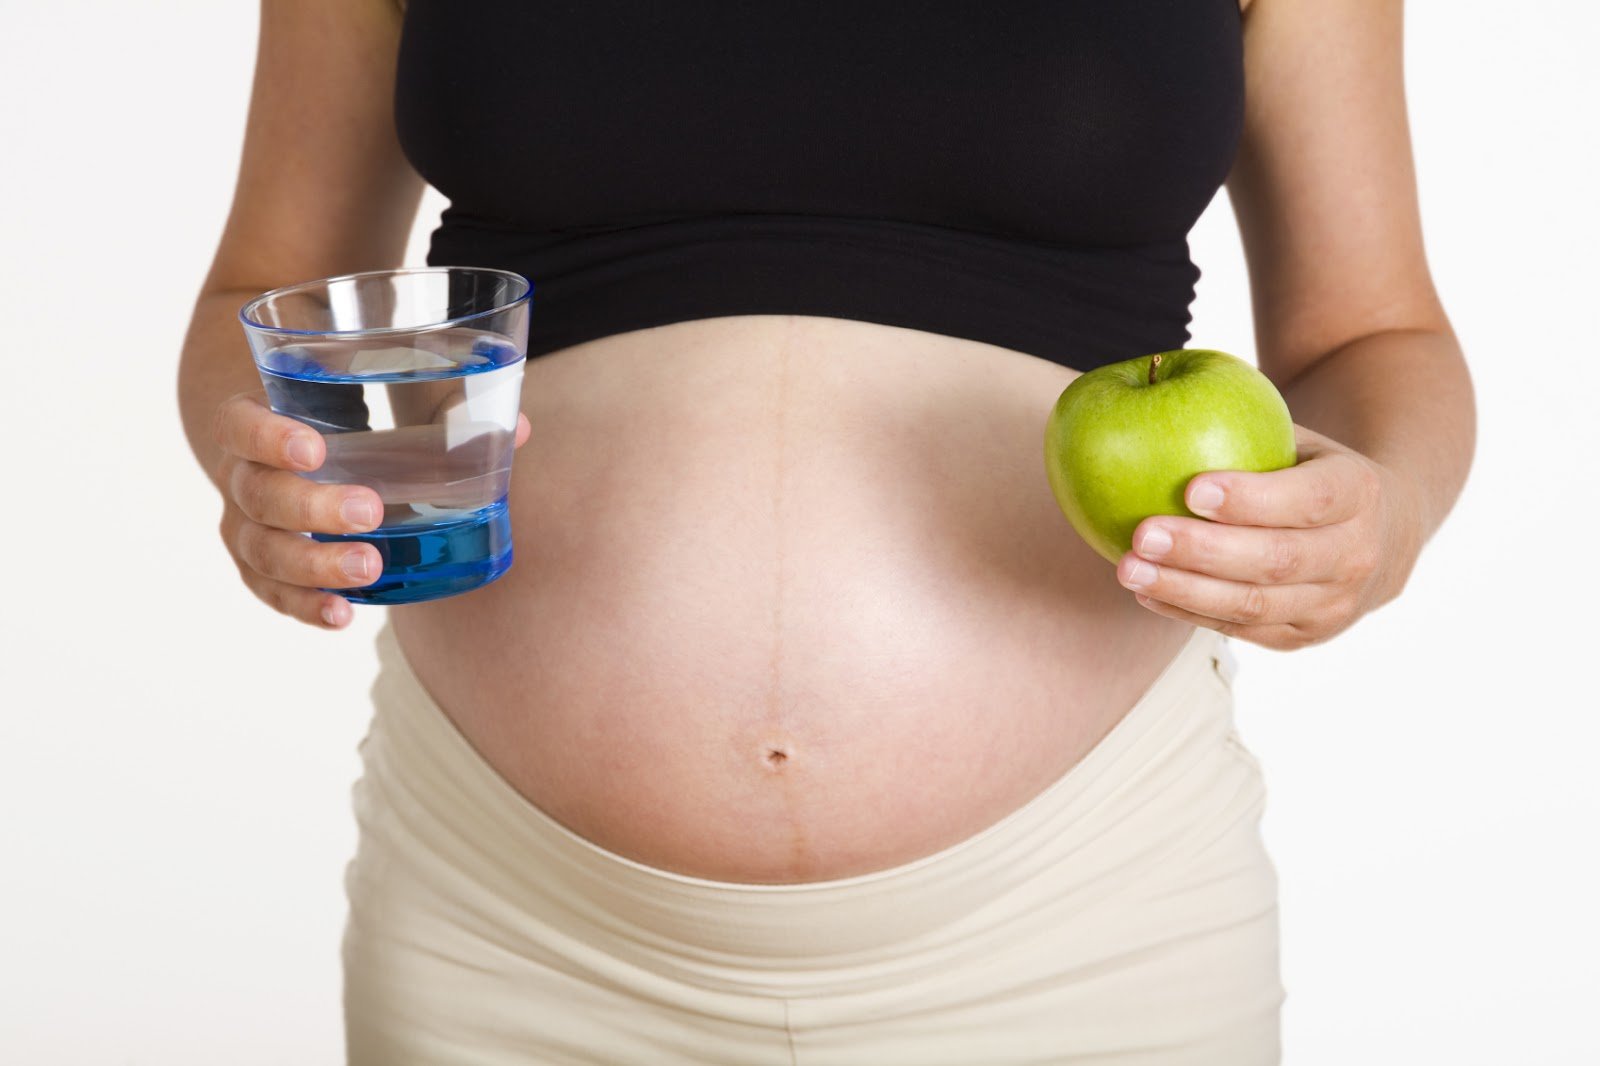 Thiếu nước ối khi mang thai và những điều cần biết